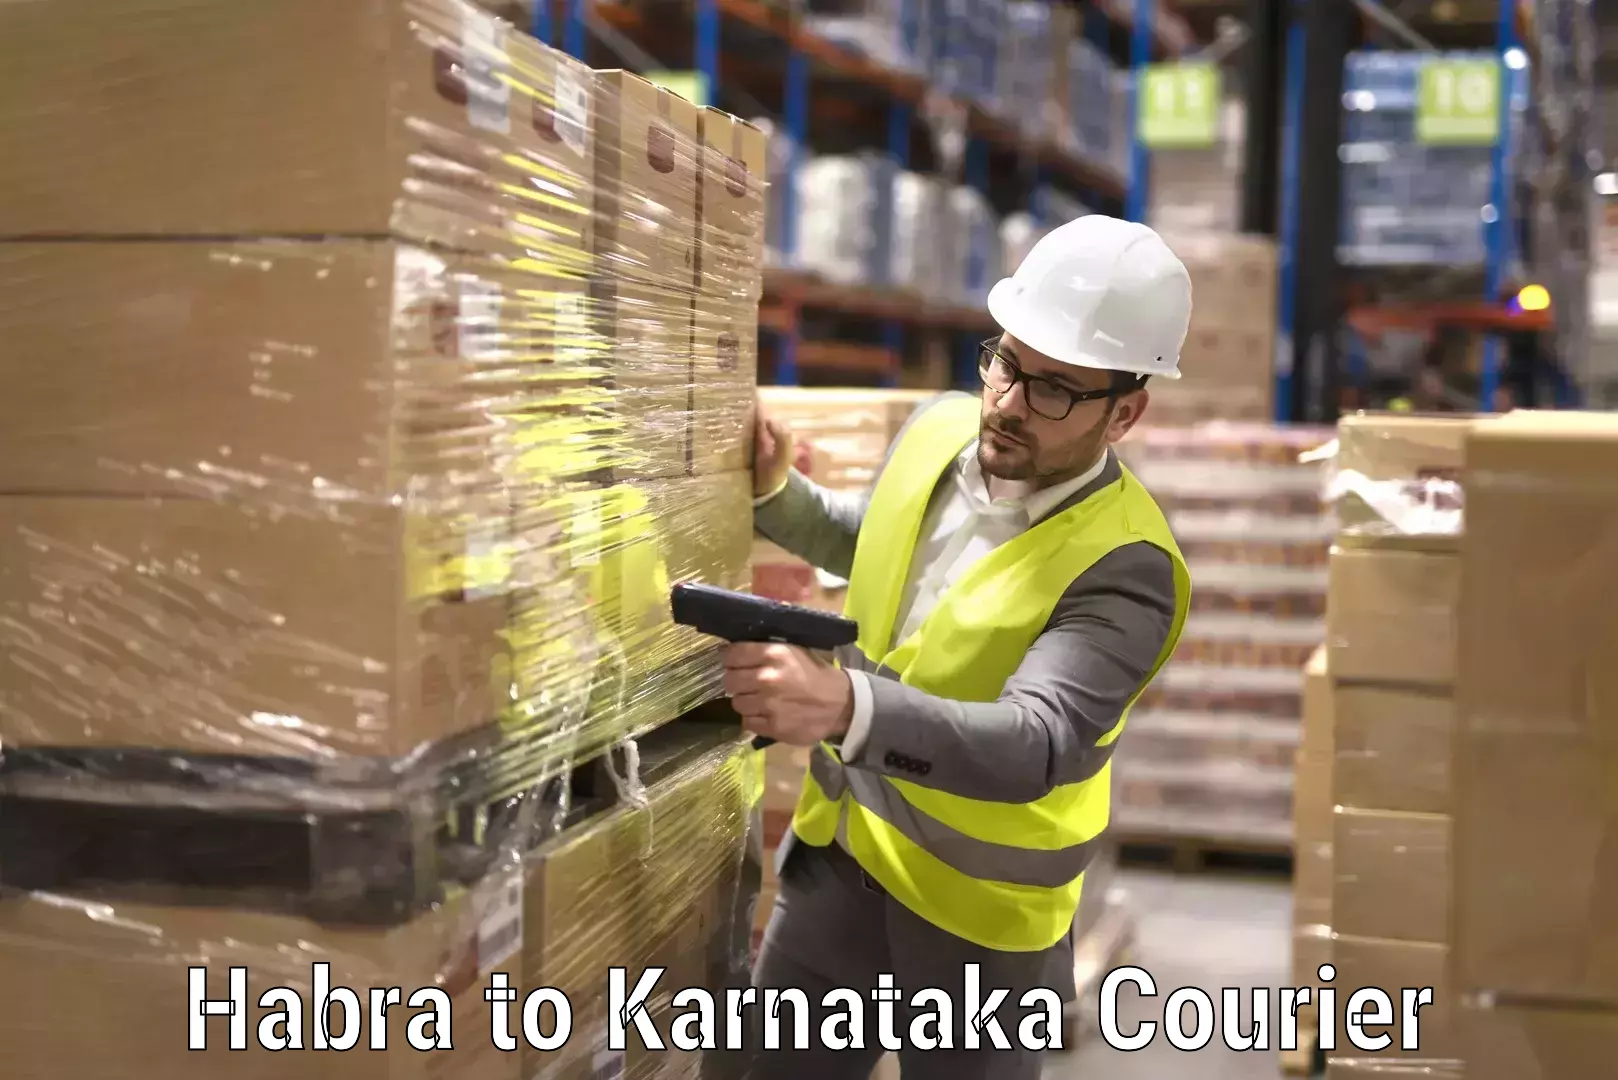 Professional packing services Habra to Karnataka